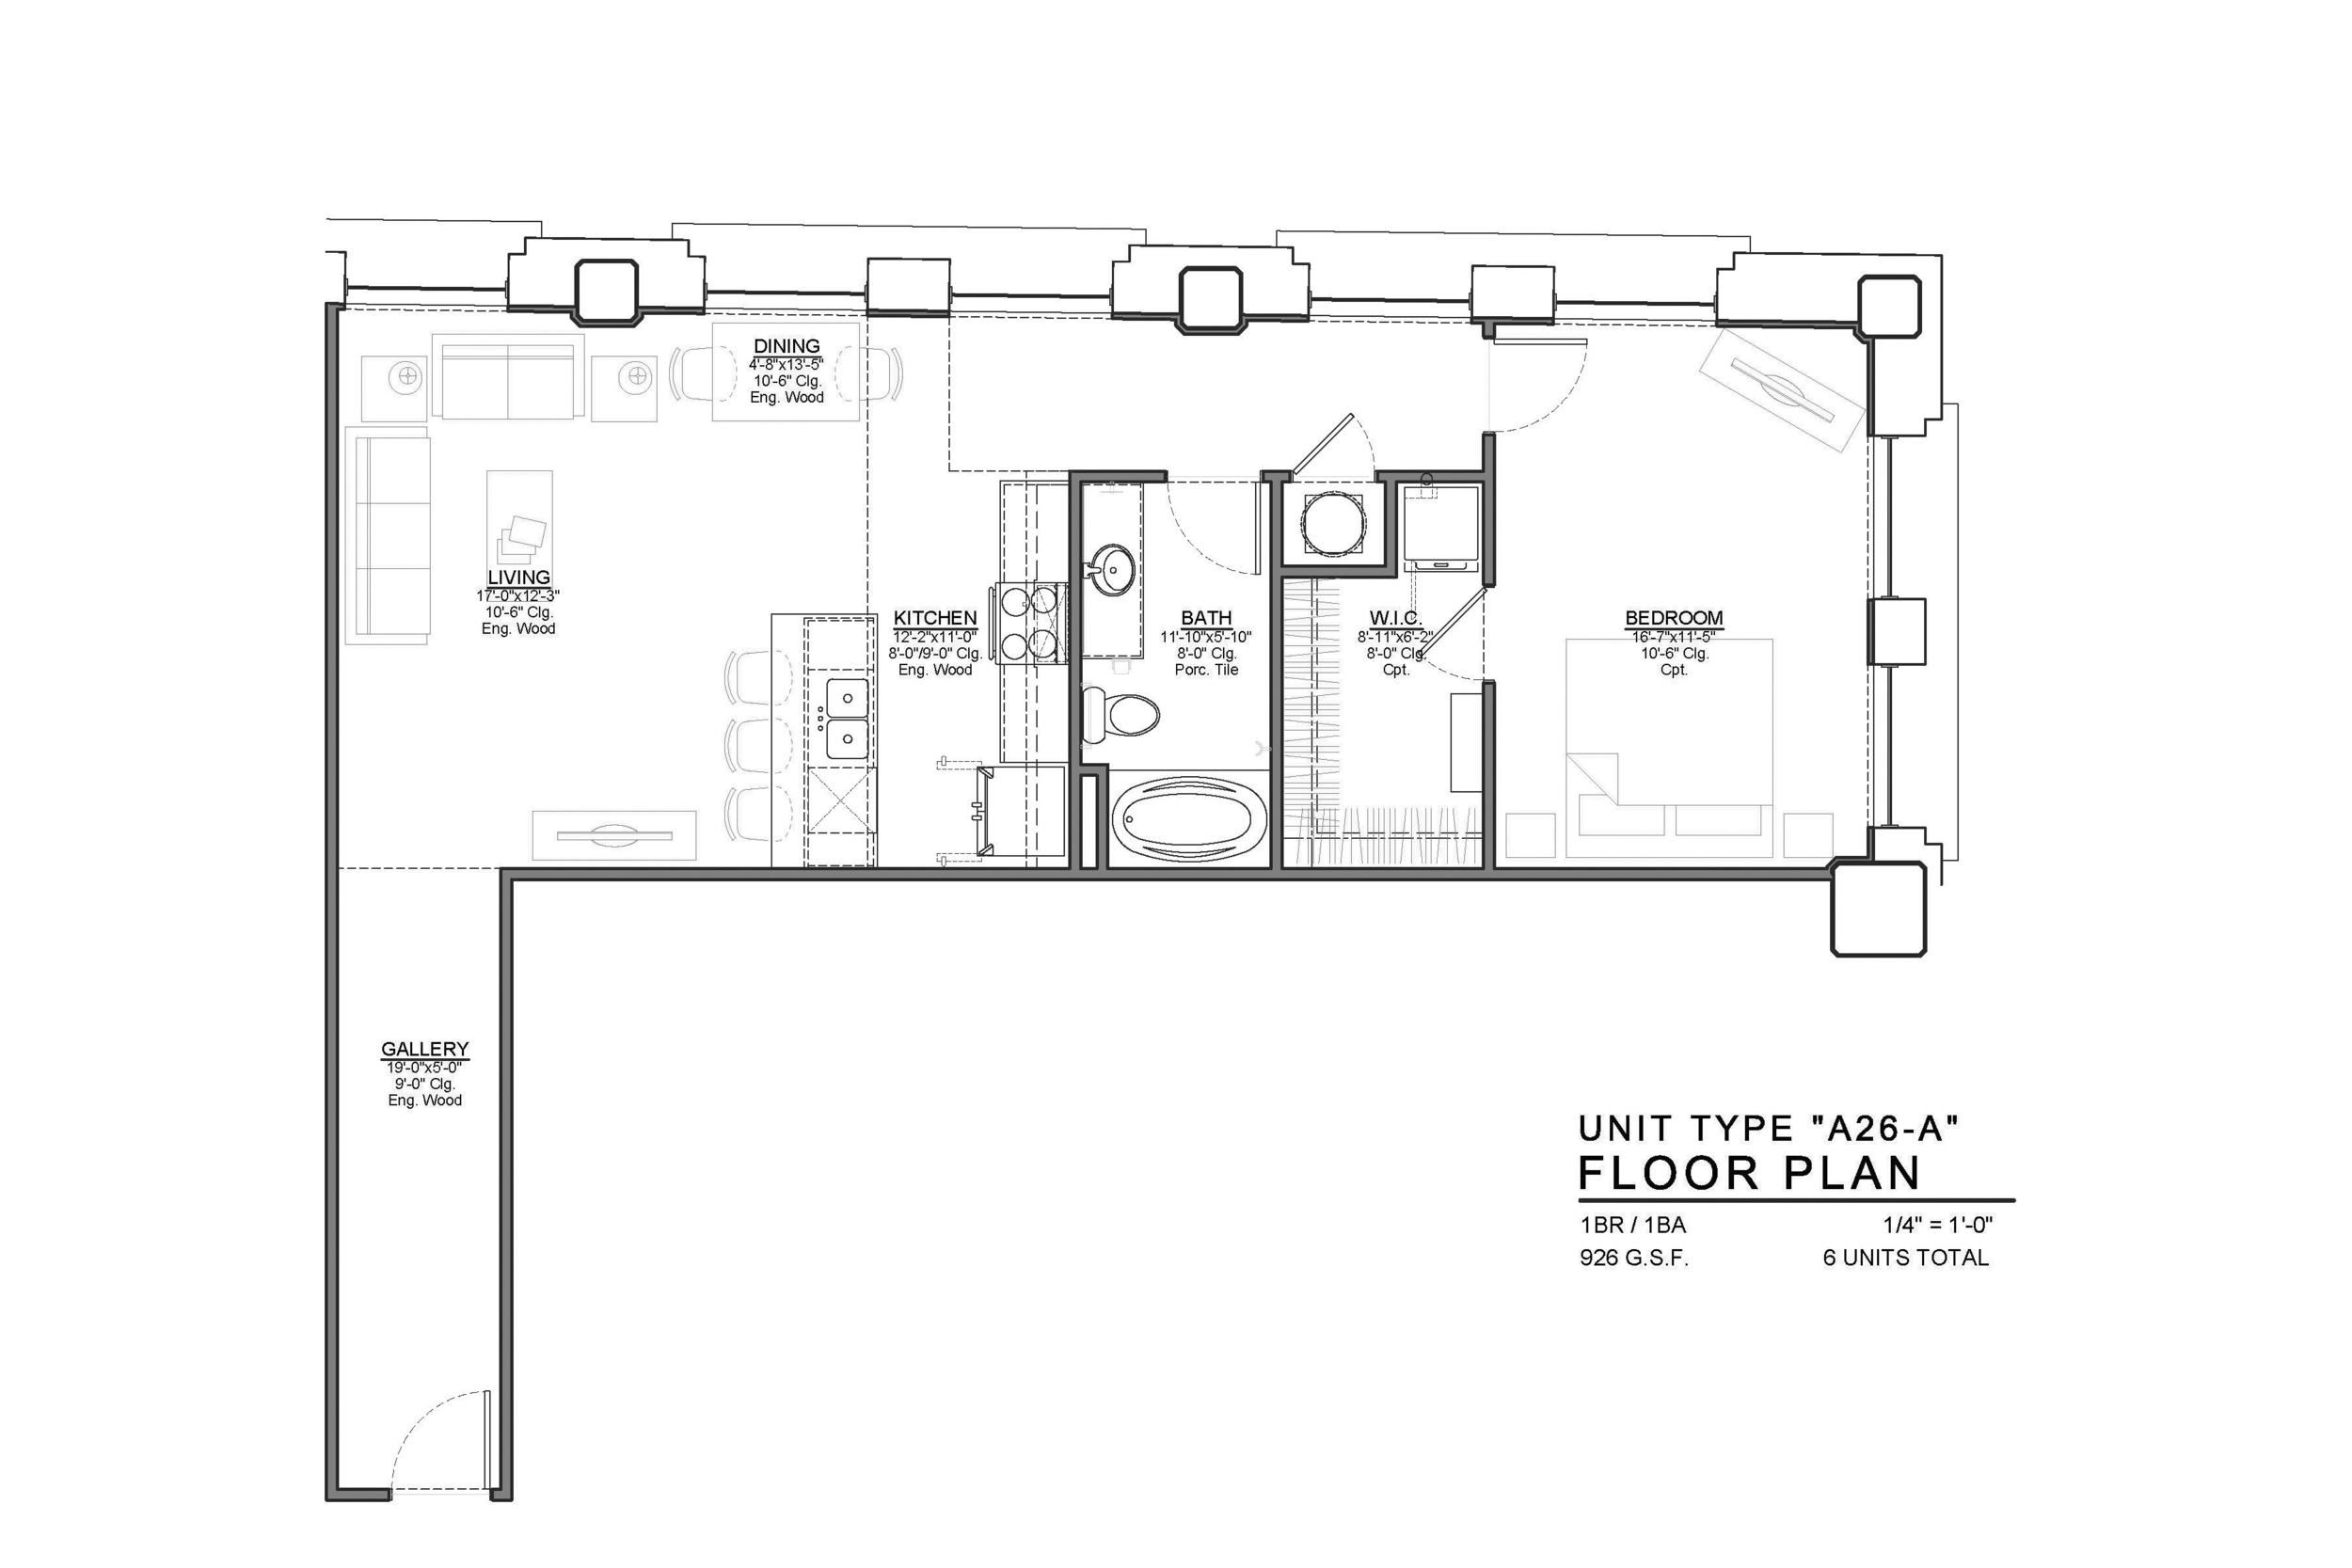 A26-A FLOOR PLAN: 1 BEDROOM / 1 BATH